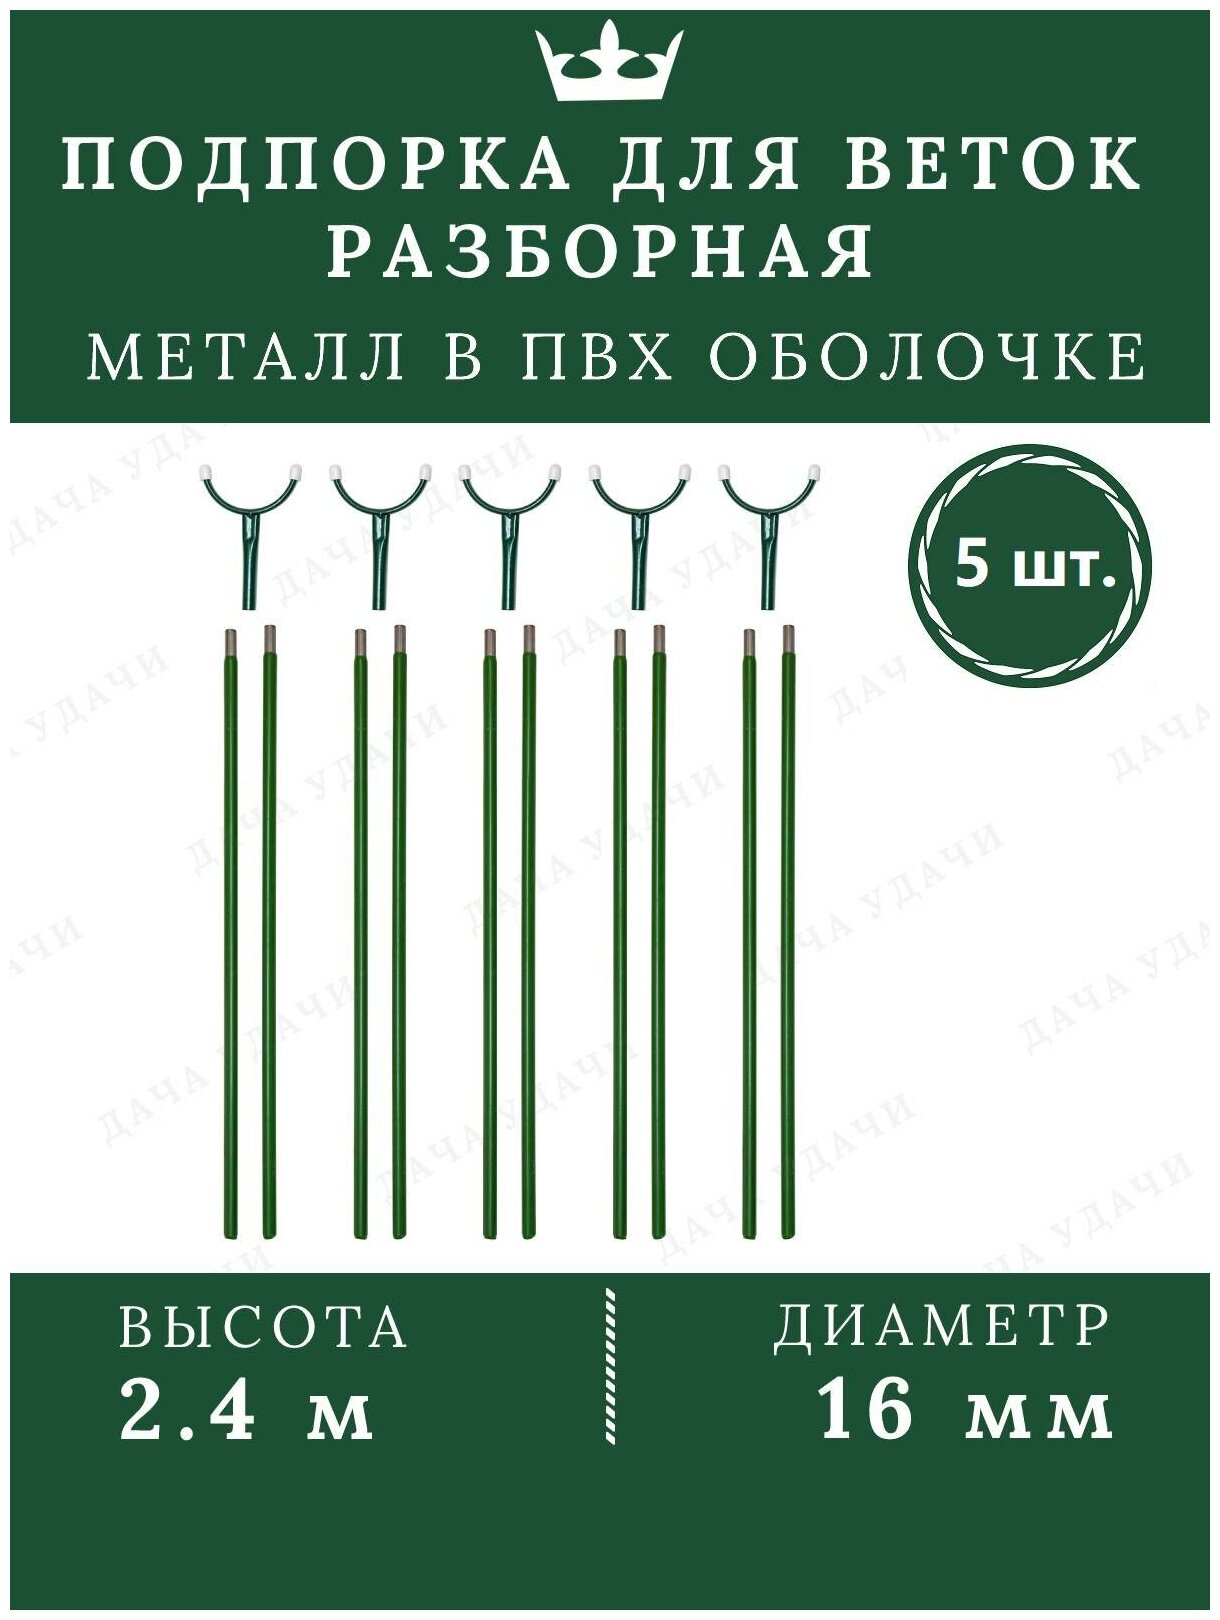 Подпорка для деревьев металл опора для растений садовая 2.4м 5 шт.